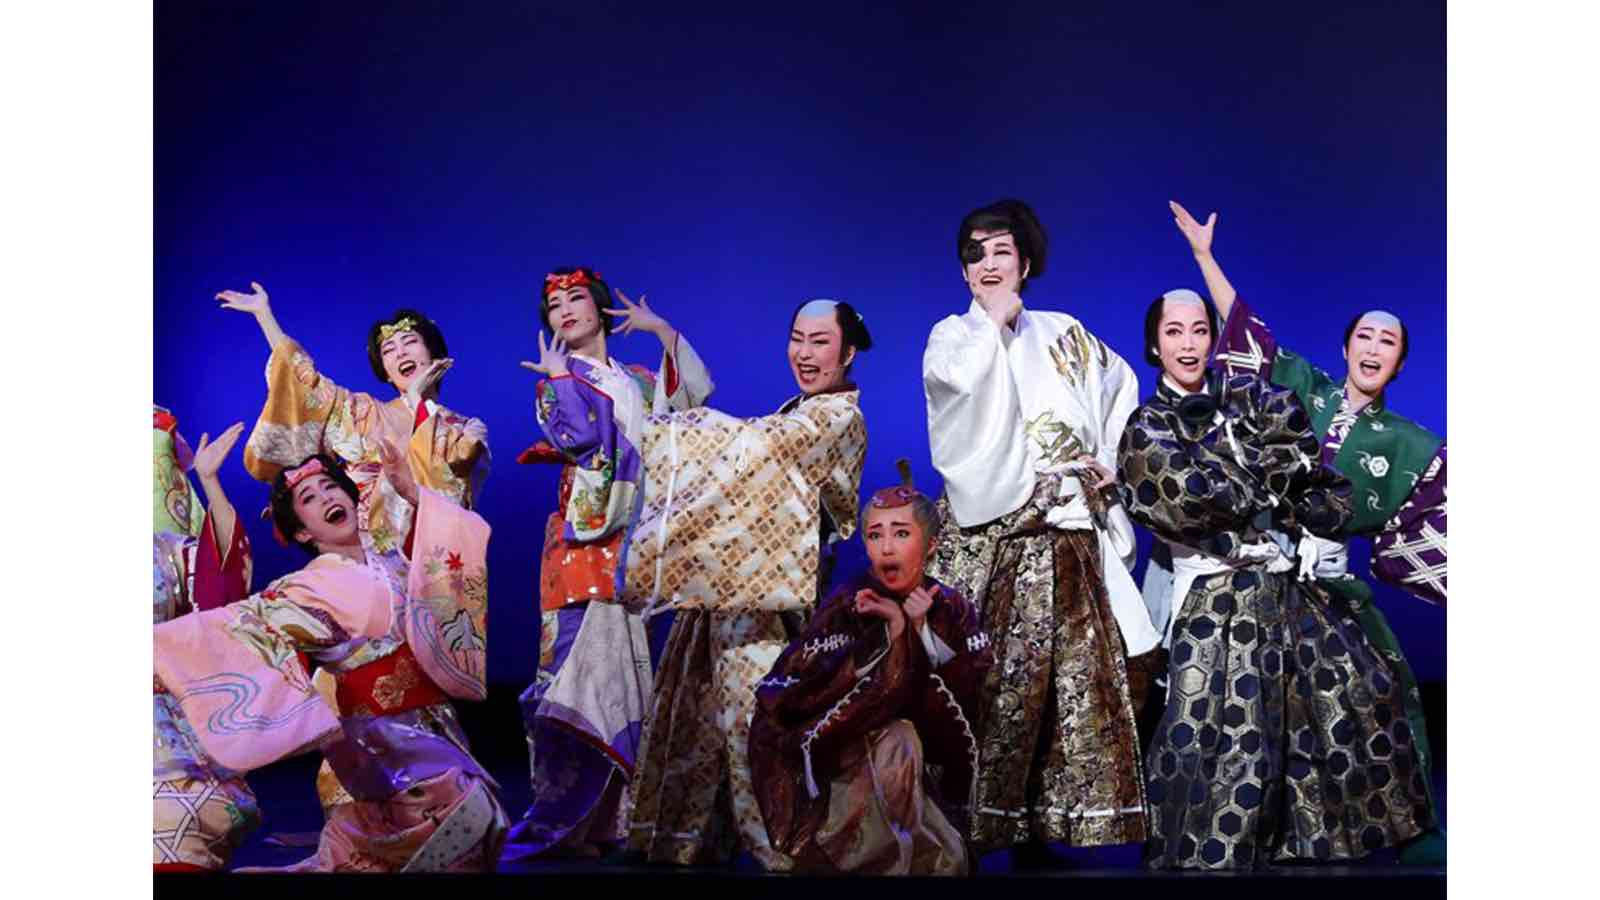 OSK日本歌劇団創立100周年記念企画「レビュー春のおどり」特別版 